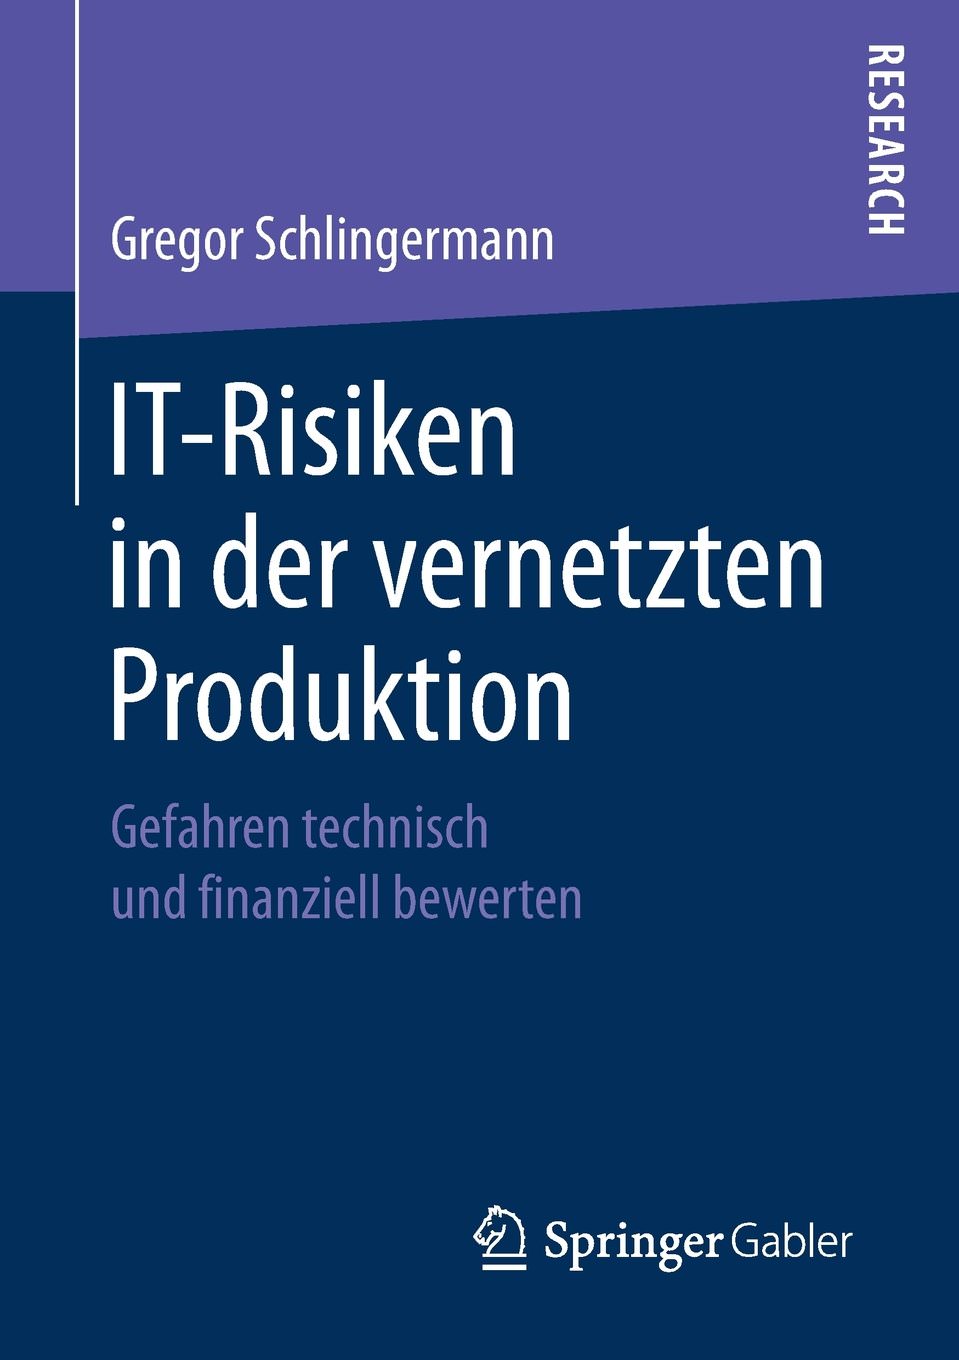 Gregor Schlingermann, It-Risiken in Der Vernetzten Produktion: Gefahren Technisch Und Finanziell Bewerten. Springer Gabler